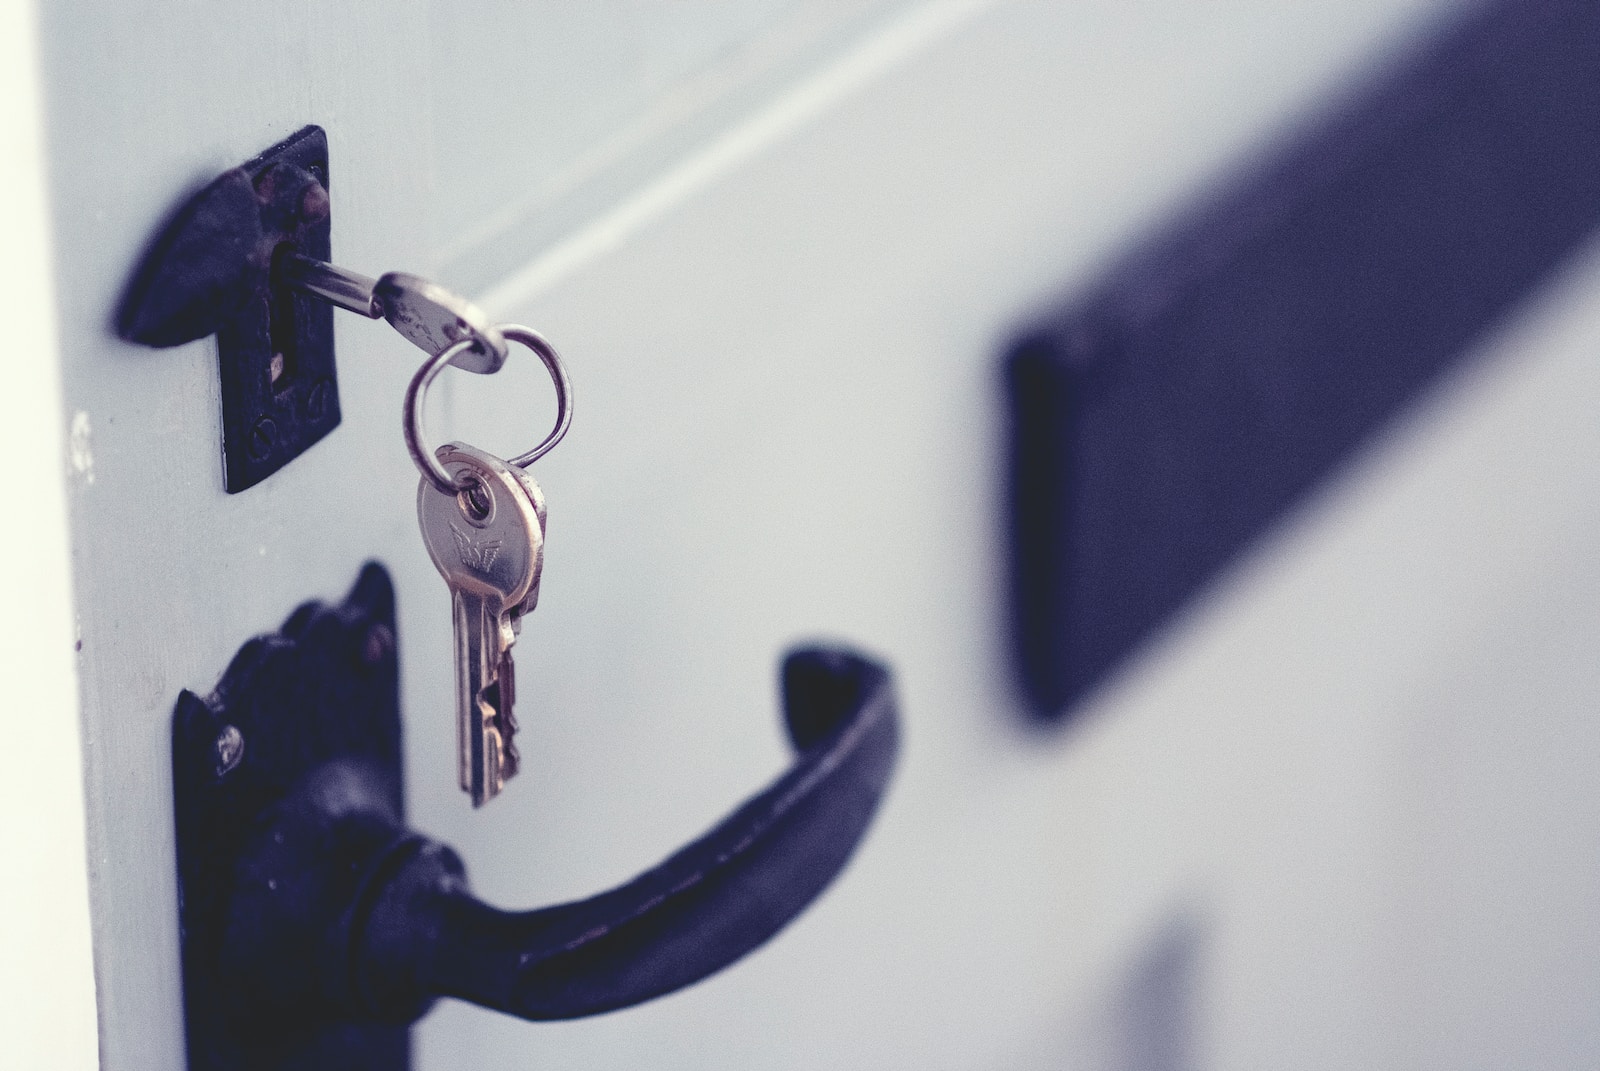 Ersatzschlüssel für Mietwohnung anfertigen: Ist das erlaubt?